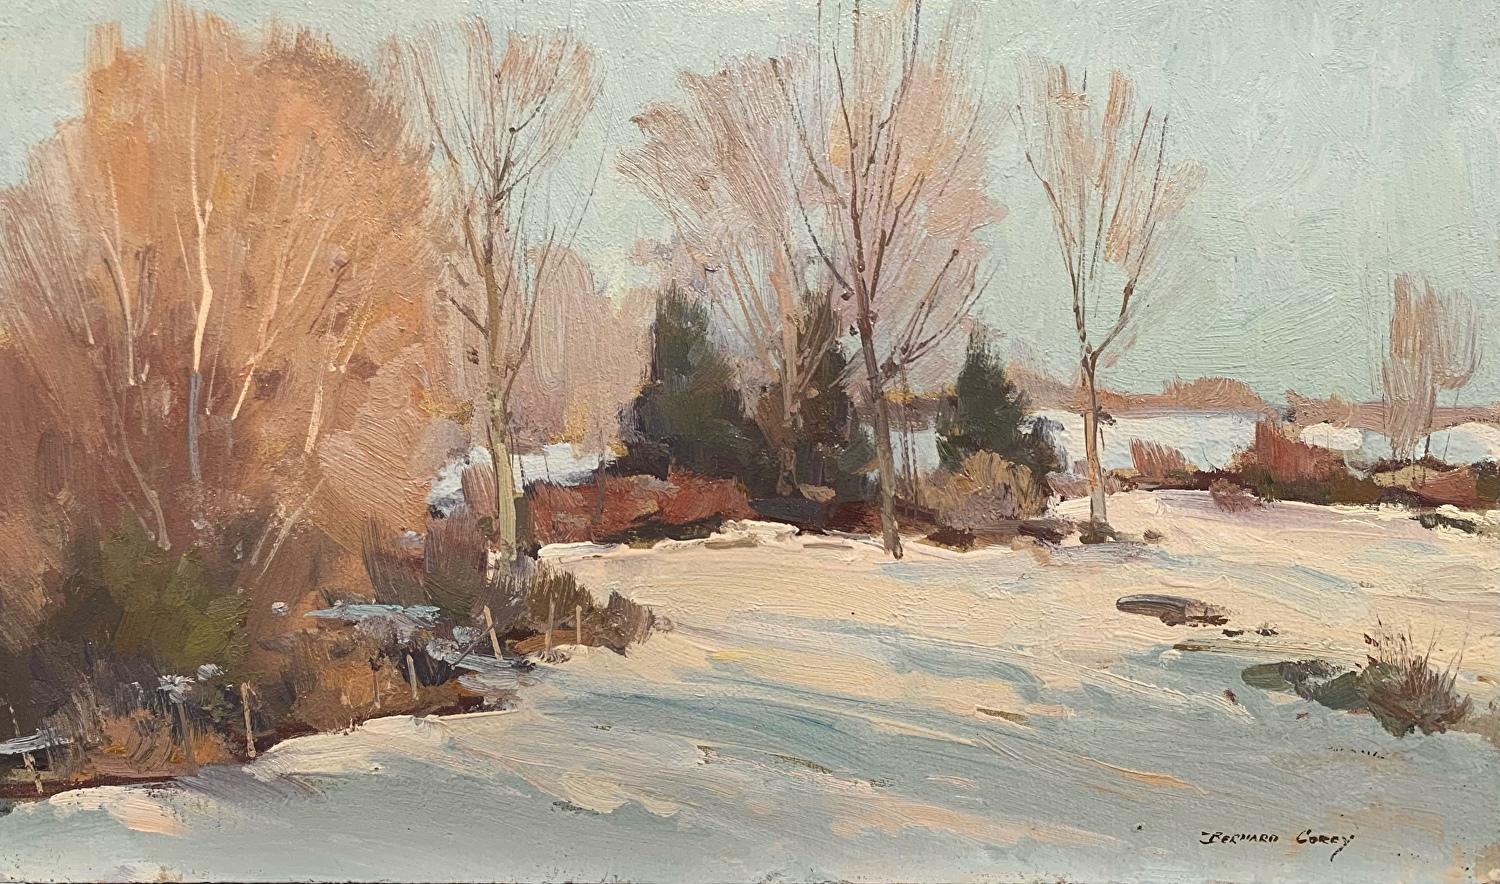 Landscape Painting Bernard Corey - Paysage d'hiver des champs de neige d'un champ 